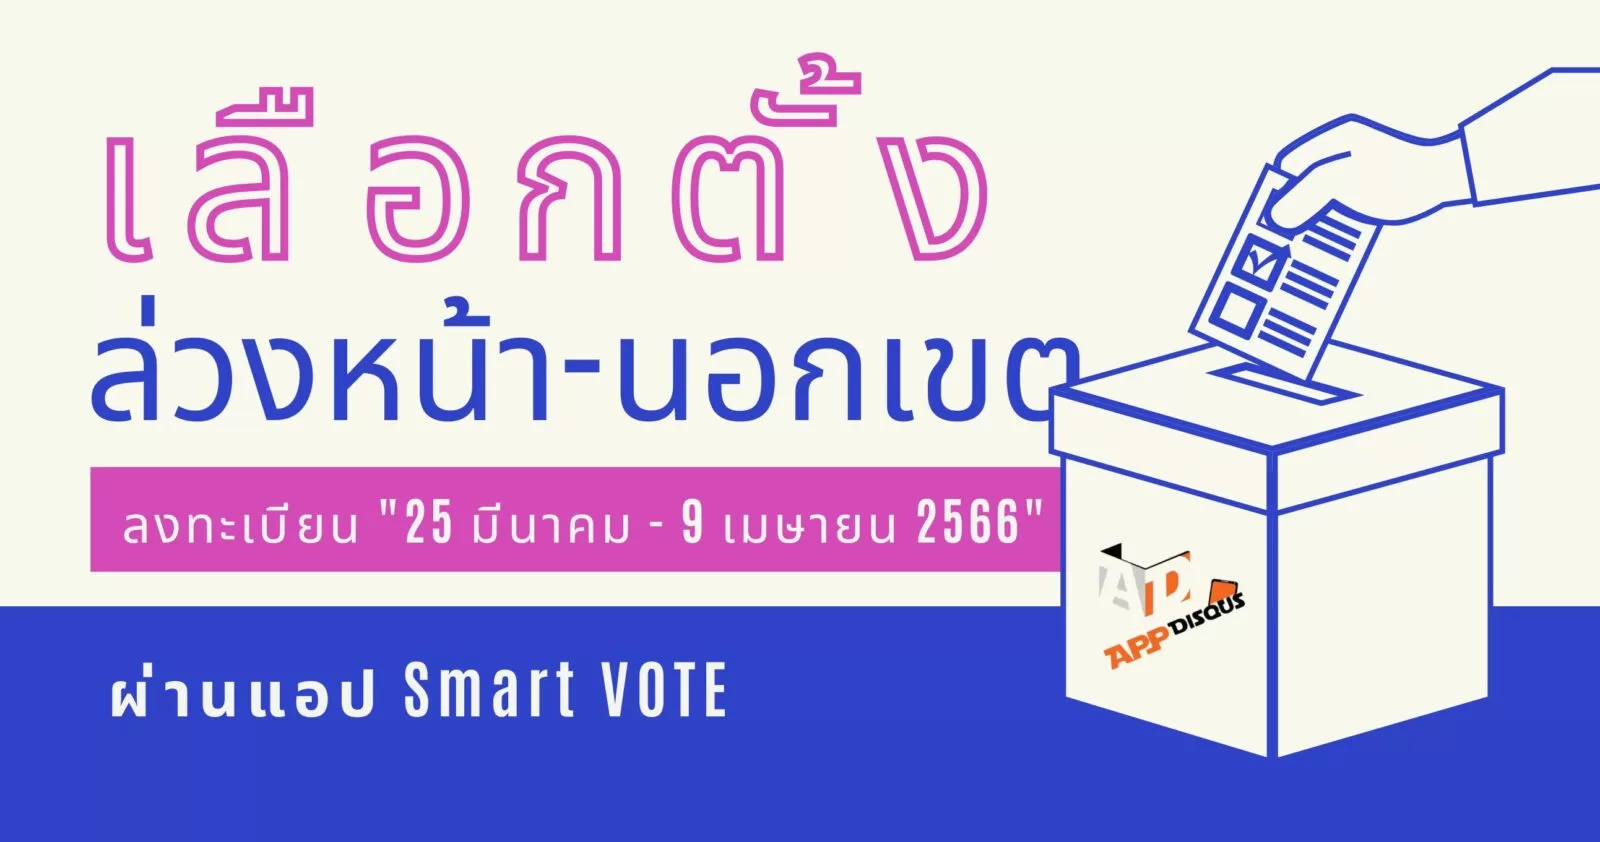 how to use smart vote application android ios 1 | Smart VOTE | [เริ่มแล้ว! 2566] วิธีลงทะเบียนเลือกตั้งล่วงหน้า นอกเขต และต่างประเทศ ผ่านออนไลน์ และแอป Smart VOTE ของ กกต.